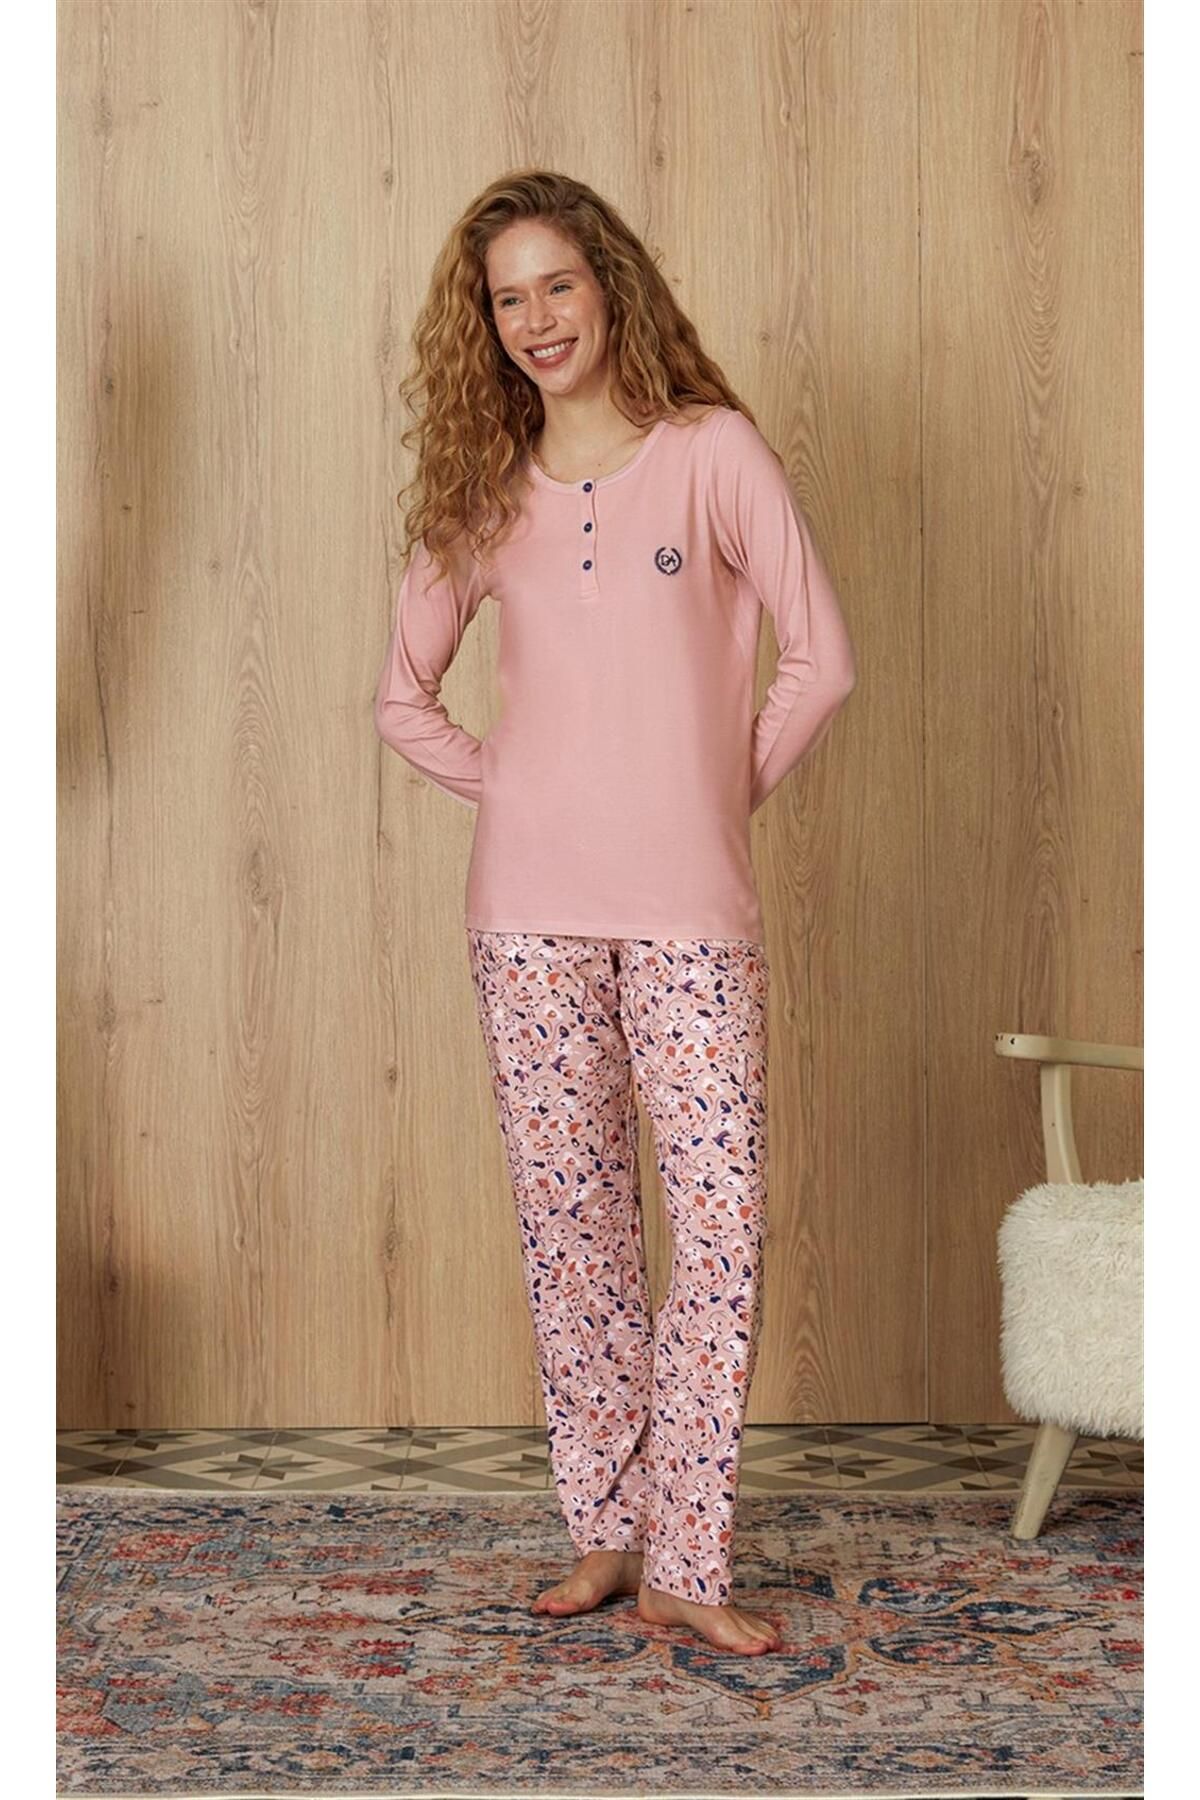 Doreanse Kadın Pembe Ebru Desenli T-shirt Pijama Takımı 4264